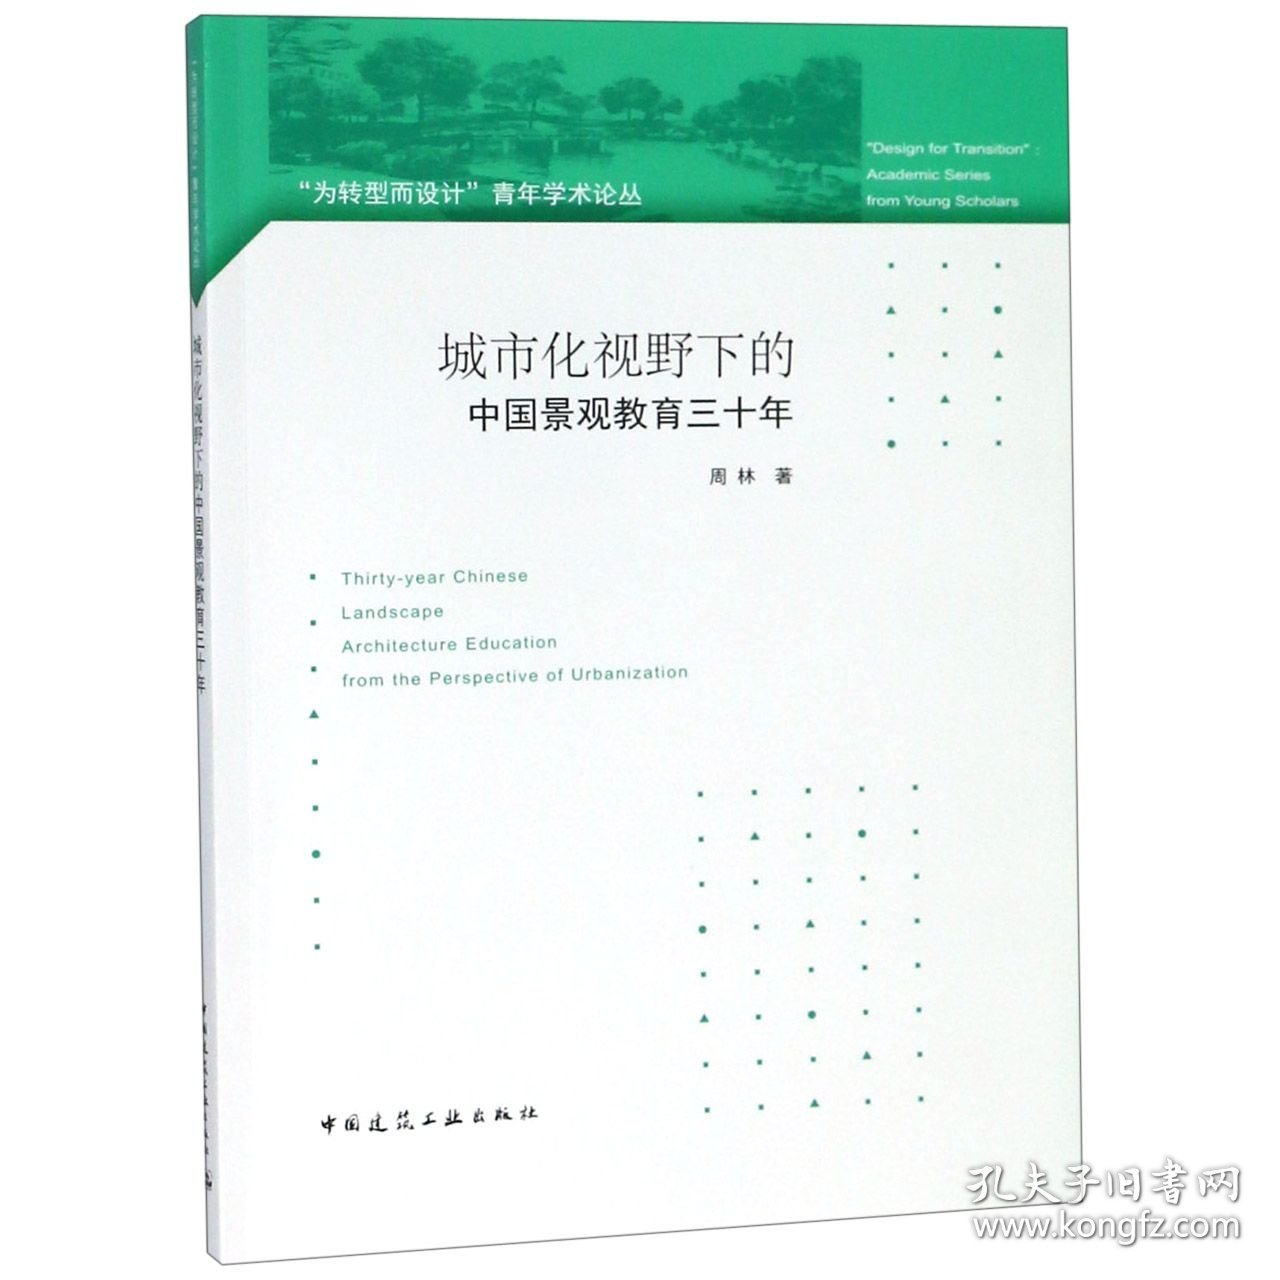 城市化视野下的中国景观教育三十年/为转型而设计青年学术论丛